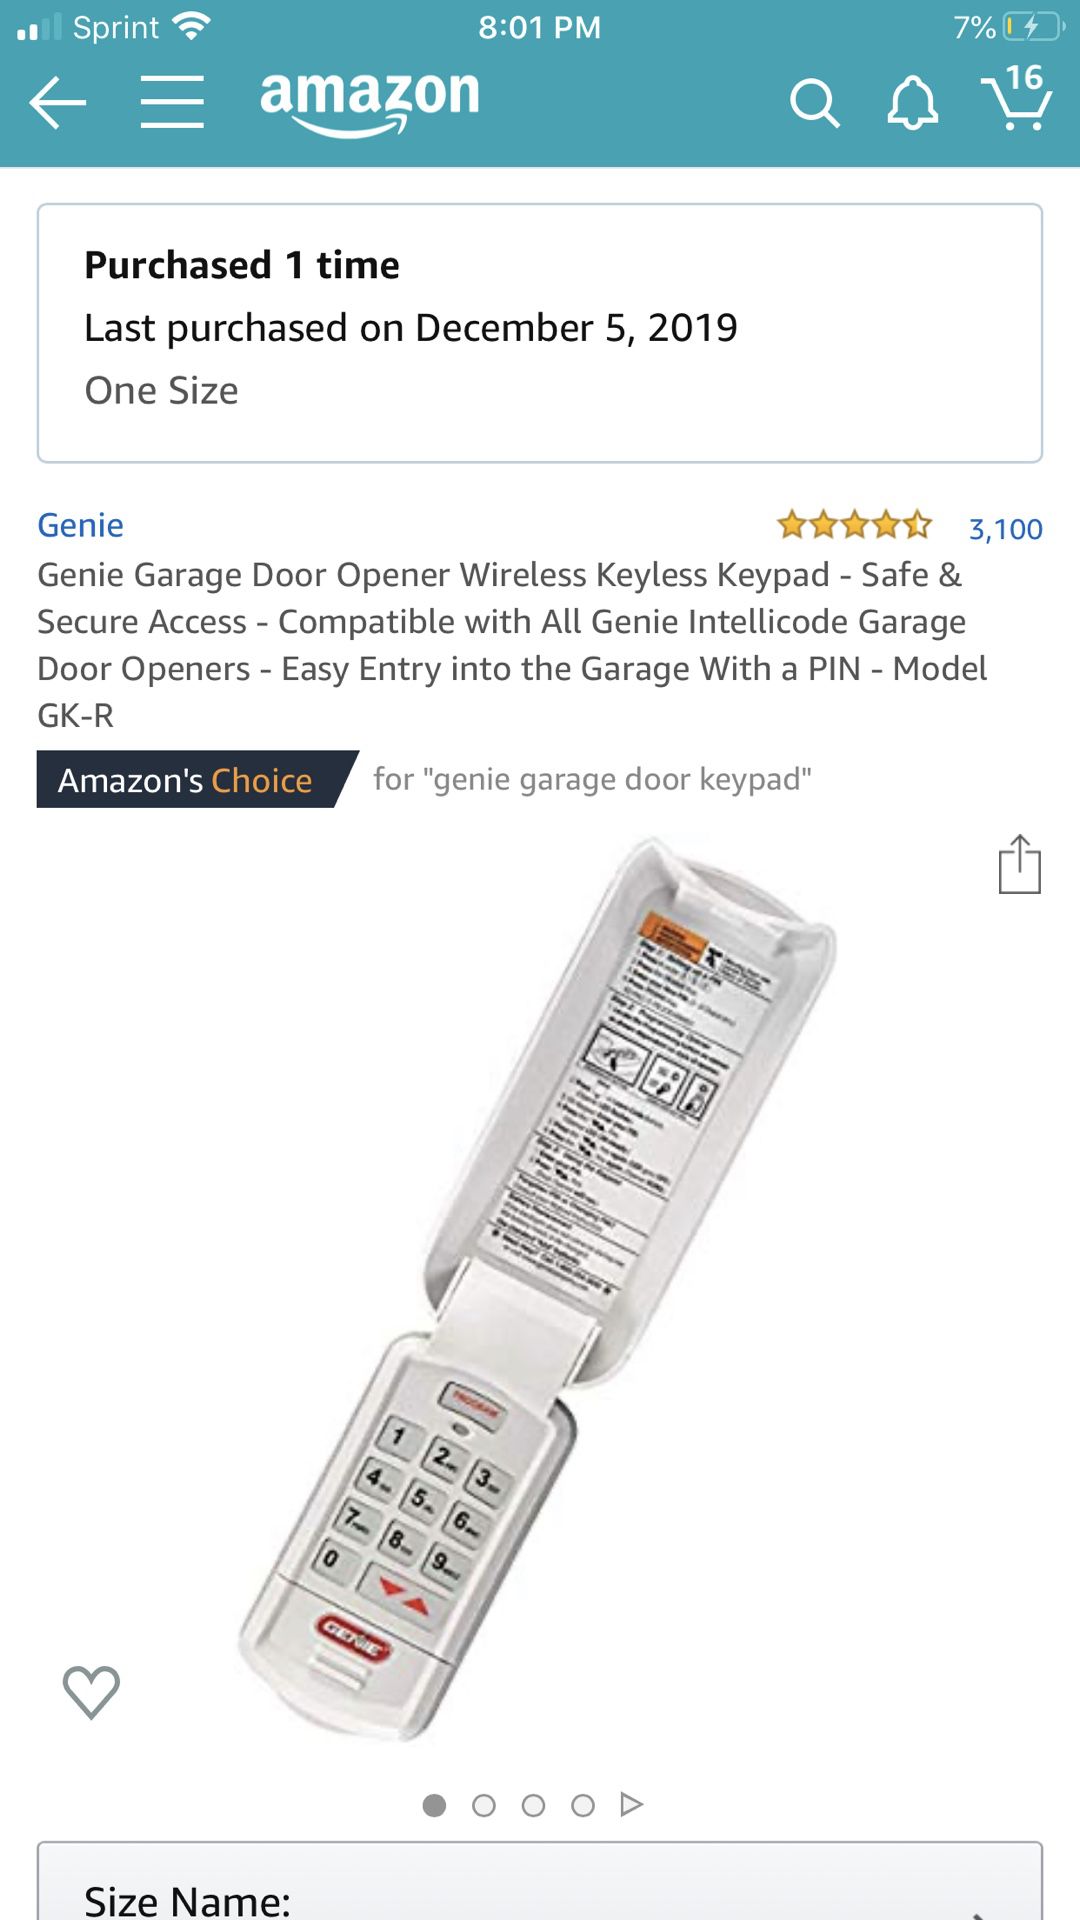 Genie wireless keypad